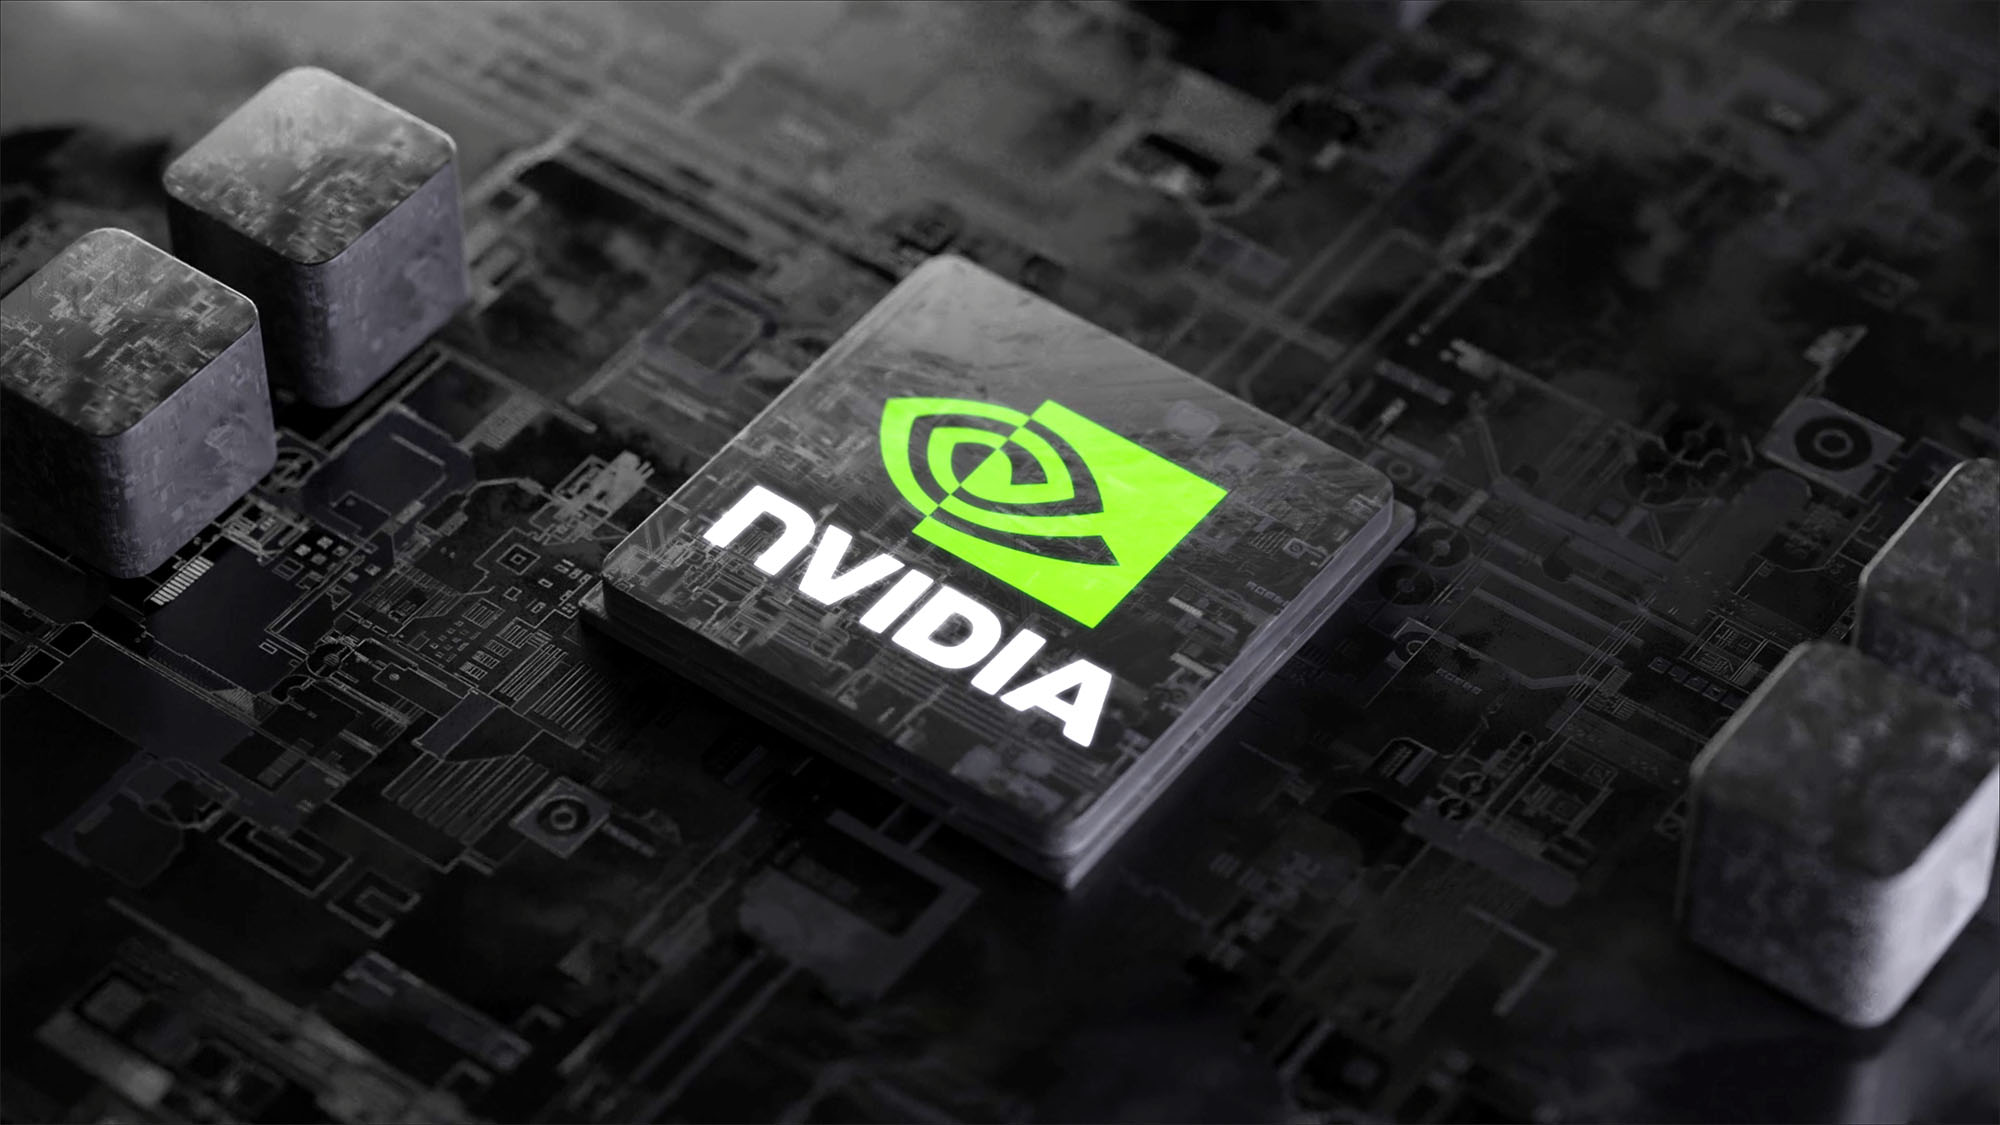 Nvidia trở thành công ty có giá trị lớn thứ 3 ở Mỹ và thứ 4 của thế giới